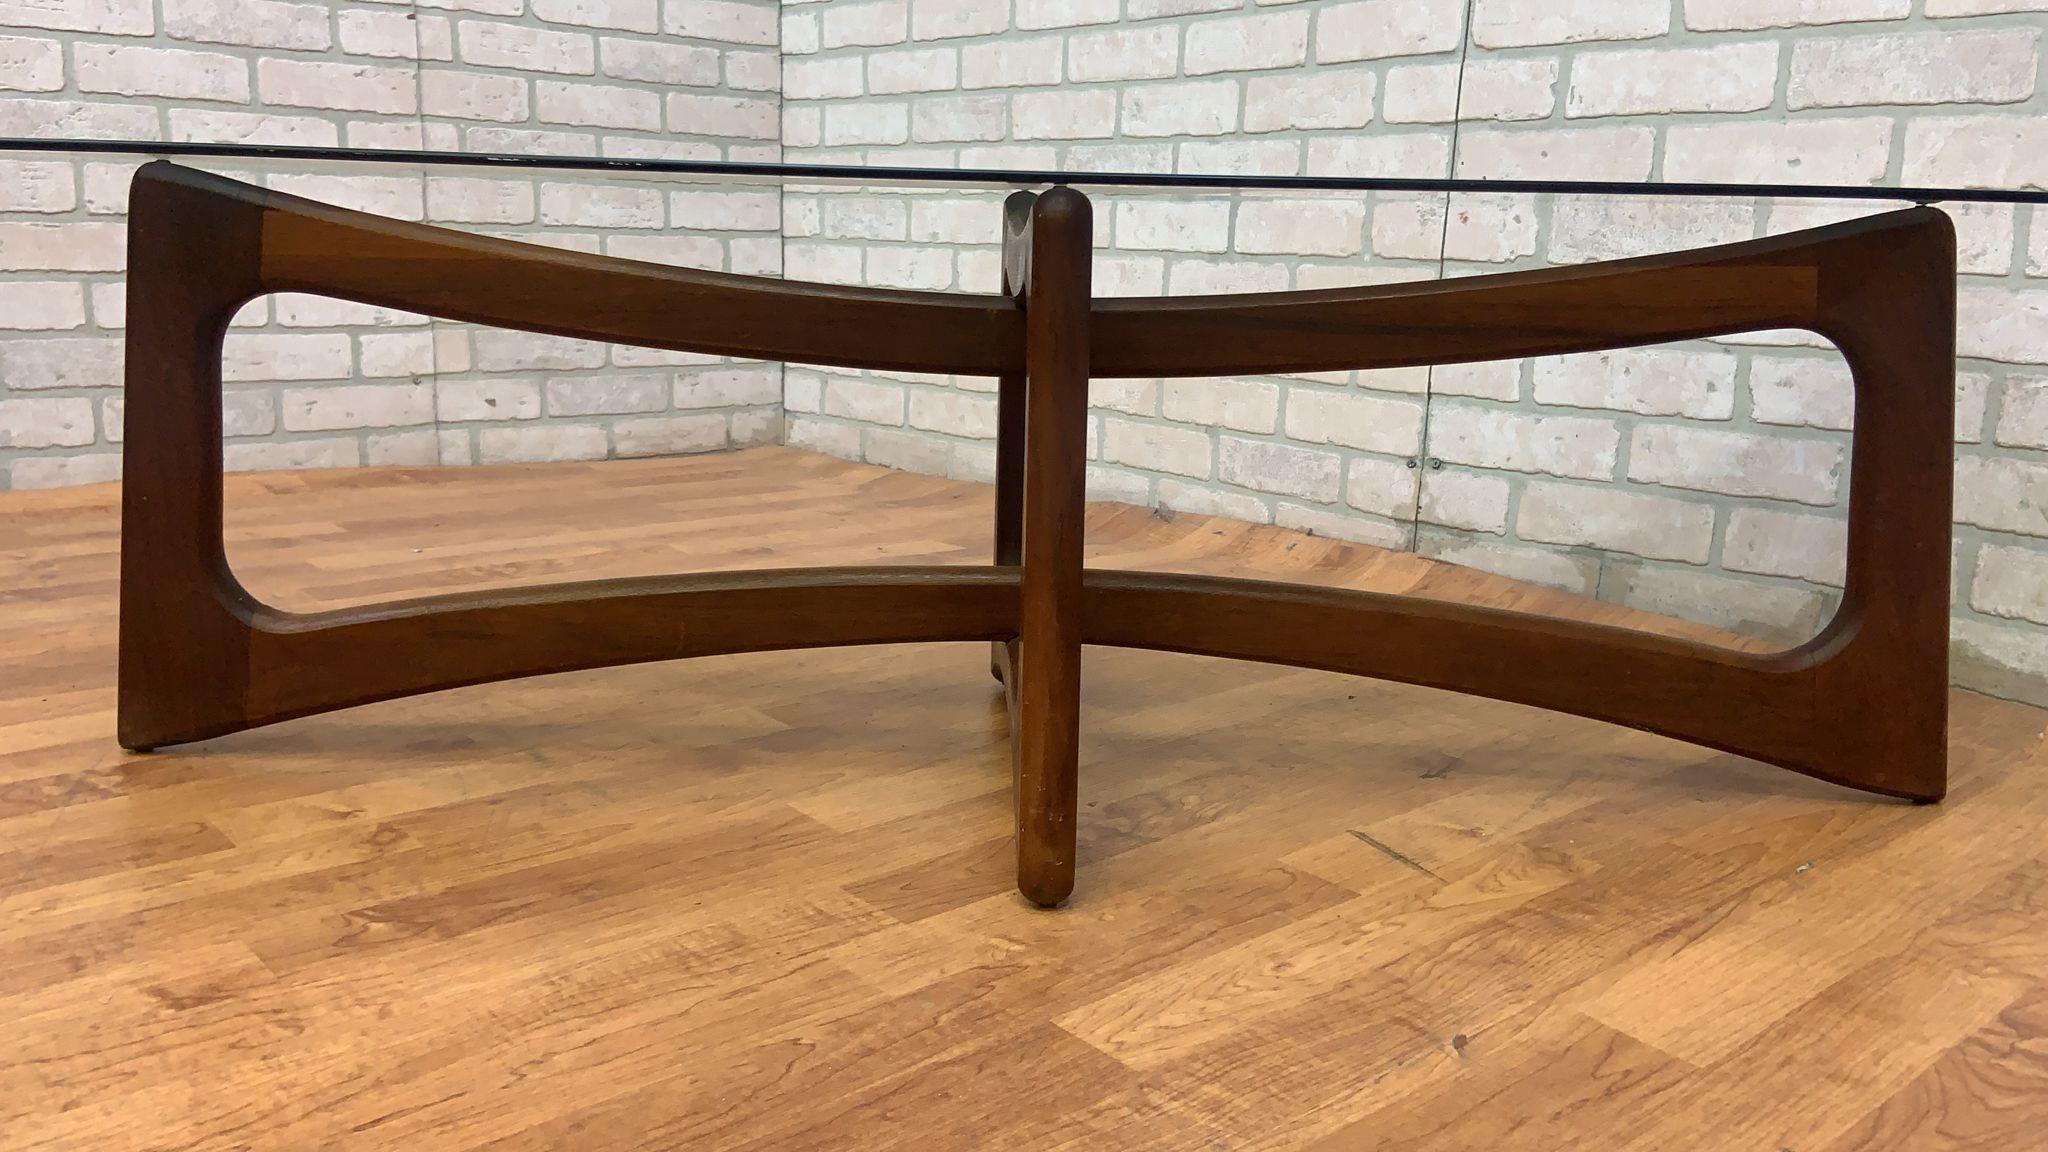 Table basse à plateau en verre et noyer de style Adrian Pearsall, moderne du milieu du siècle dernier 

Il s'agit d'une table basse moderne du milieu du siècle très frappante. Avec son design 